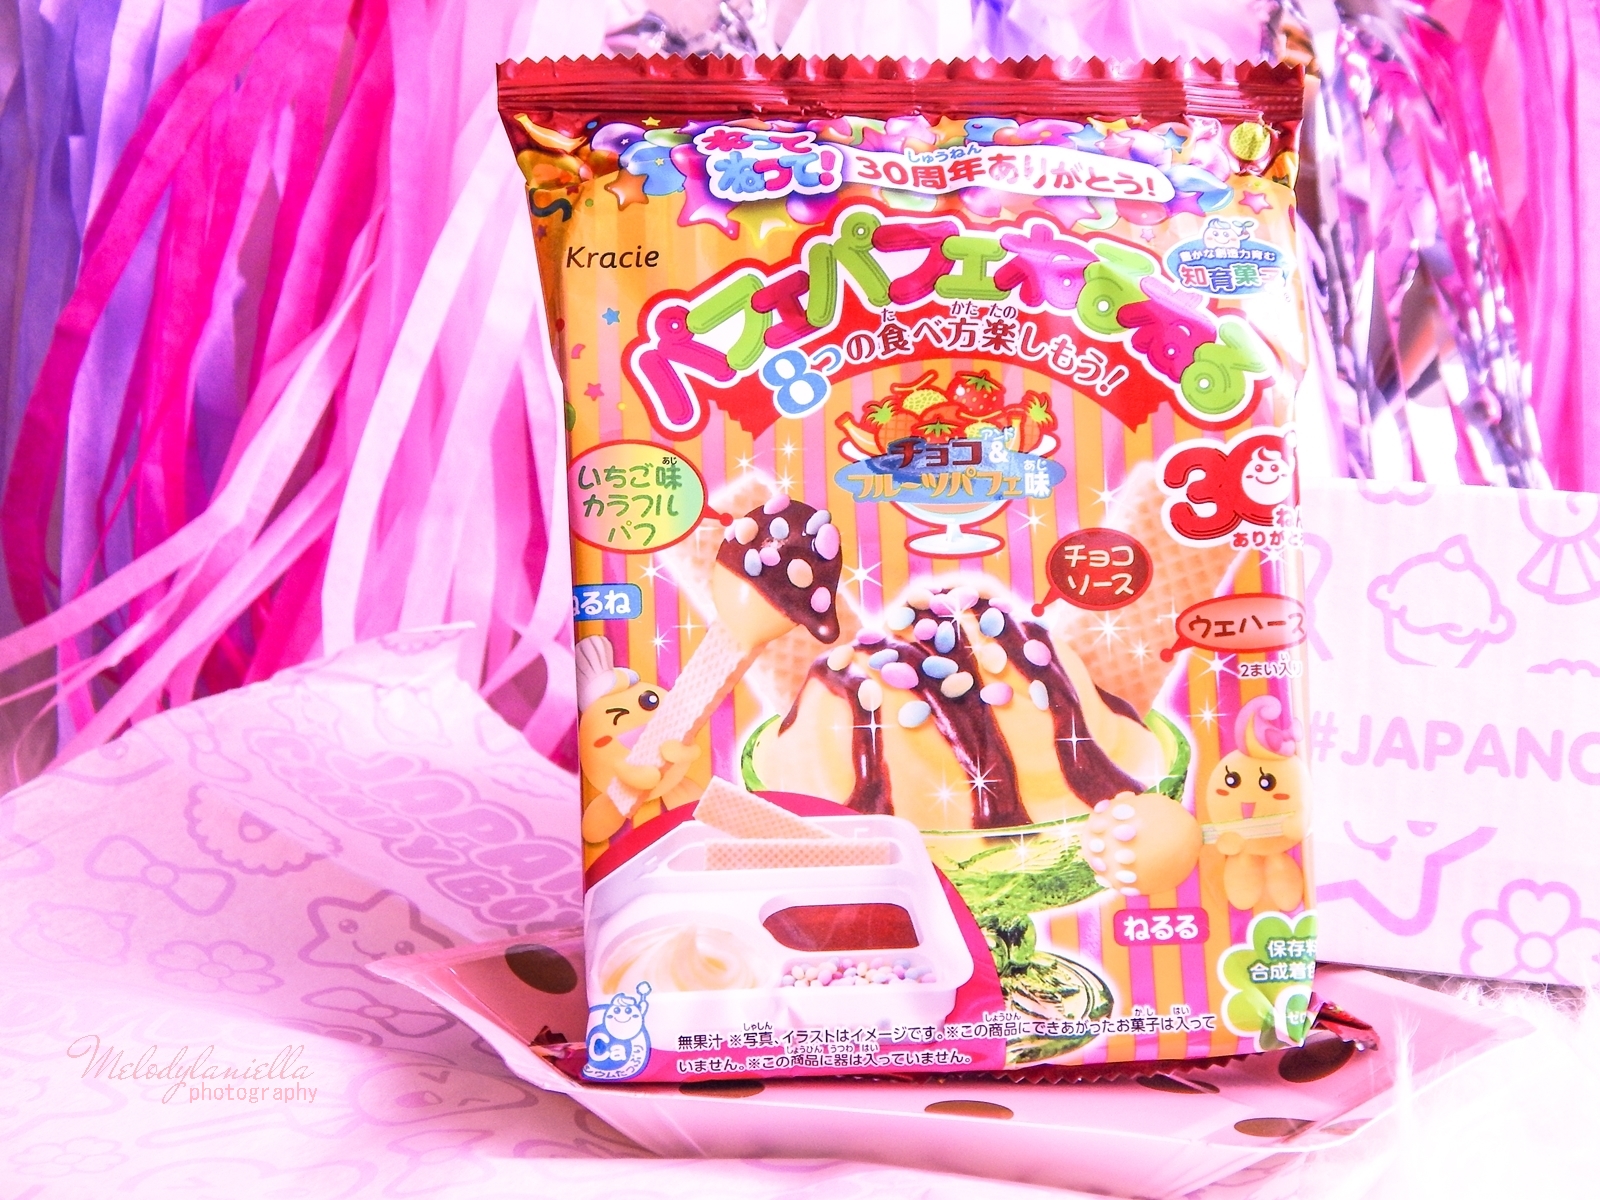 2 melodylaniella photography partybox japan candy box pudełko słodkości z japonii azjatyckie słodycze ciekawe jedzenie z japonii cukierki z azji boxy z jedzeniem kracie parfait neruneru DIY candy kit